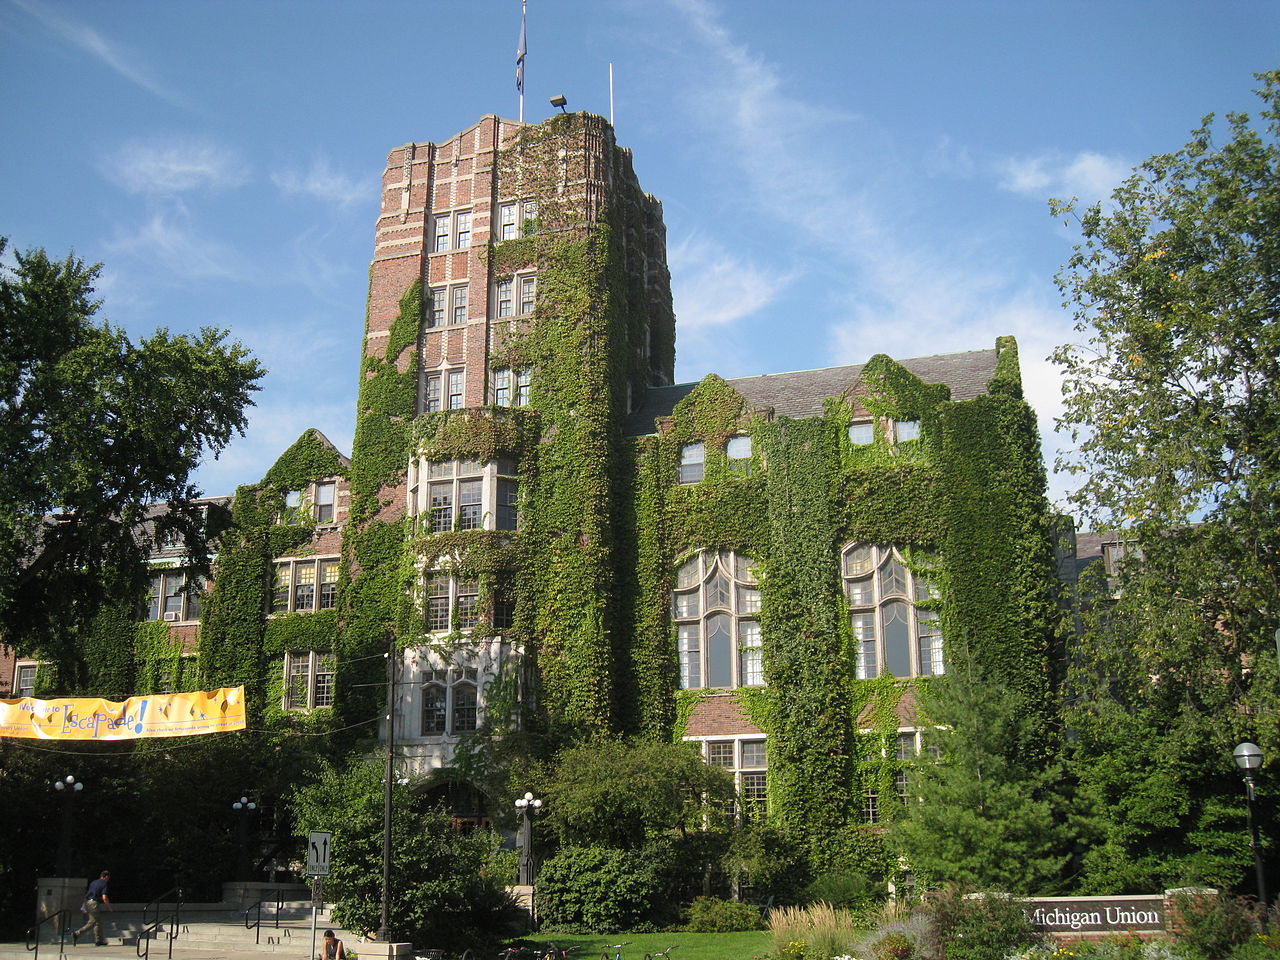 University of Michigan Union